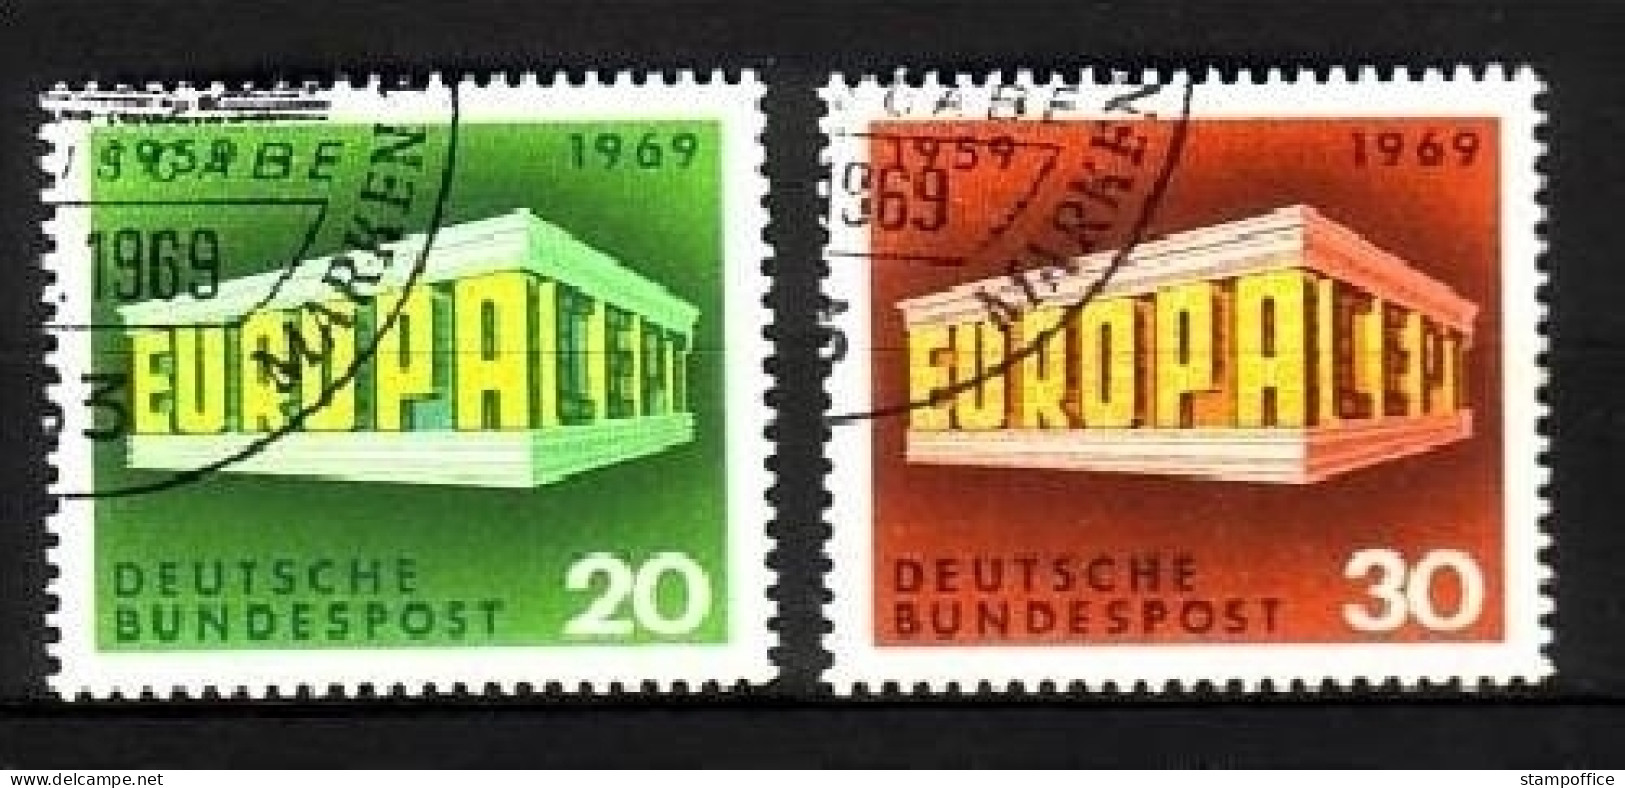 DEUTSCHLAND MI-NR. 583-584 O EUROPA 1969 - EUROPA CEPT - 1969